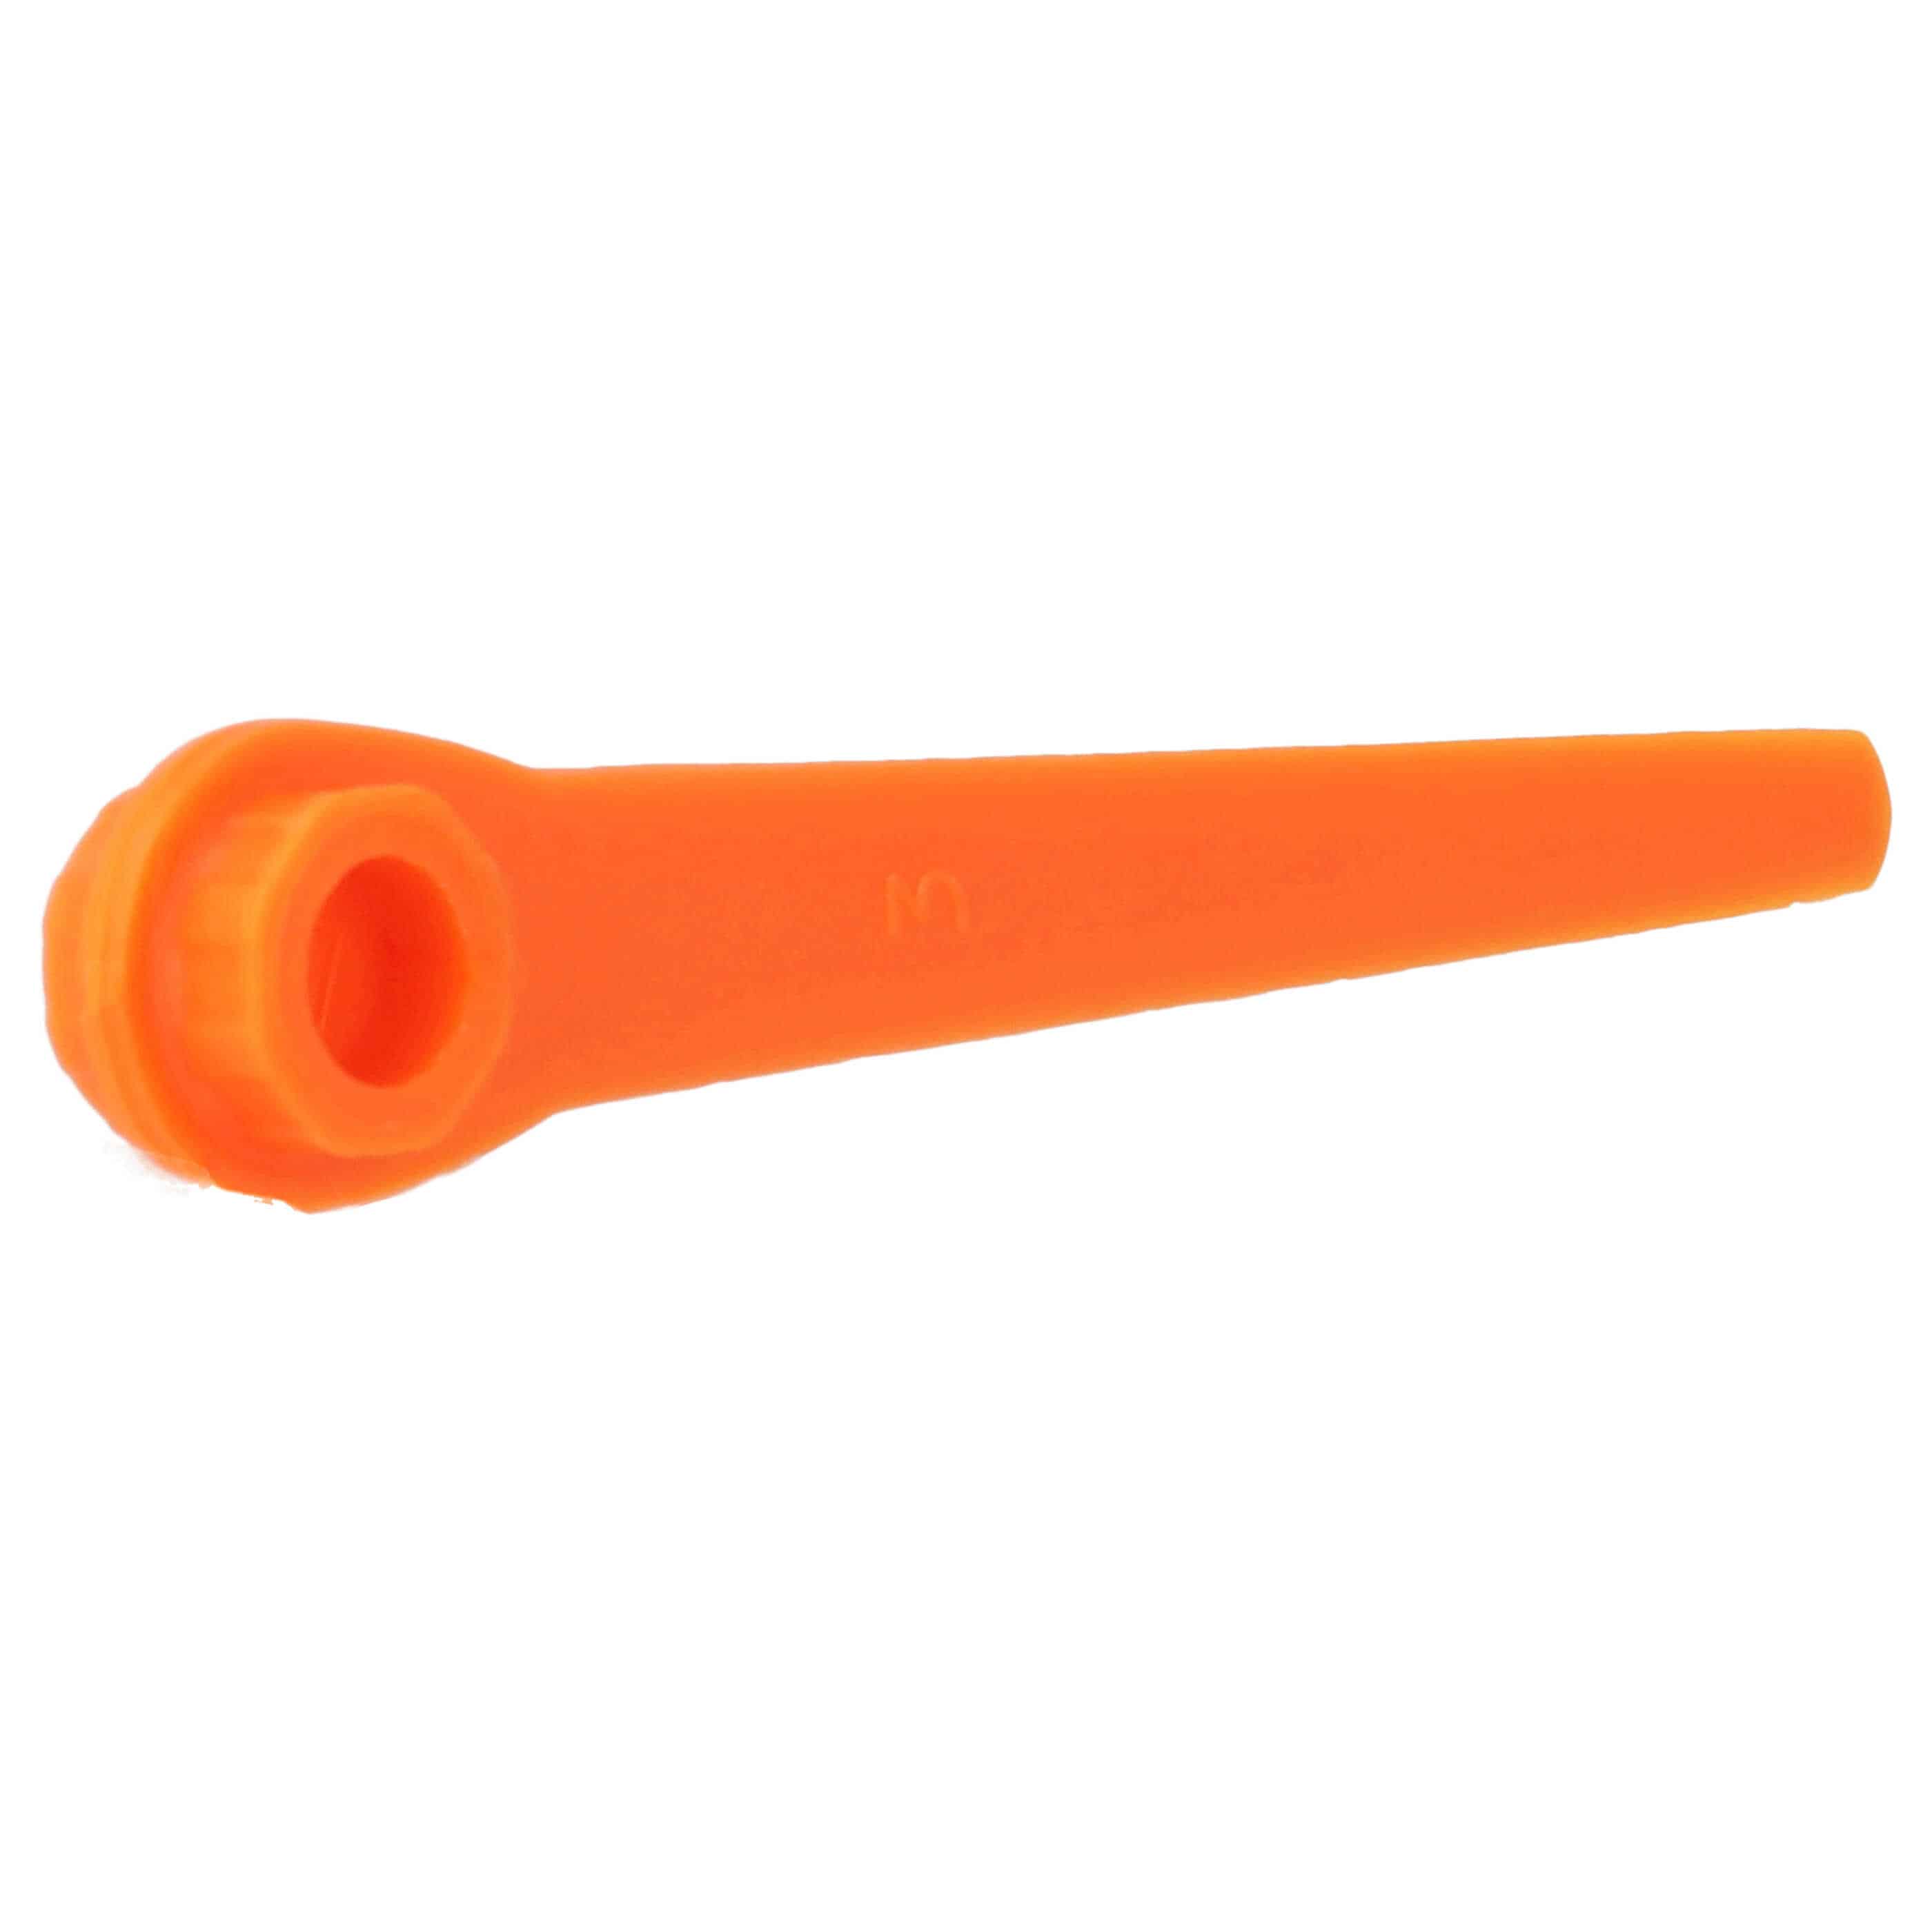 5x Lames remplace Gardena RotorCut 5368-20 pour débroussailleuse – Couteaux plastique, Orange